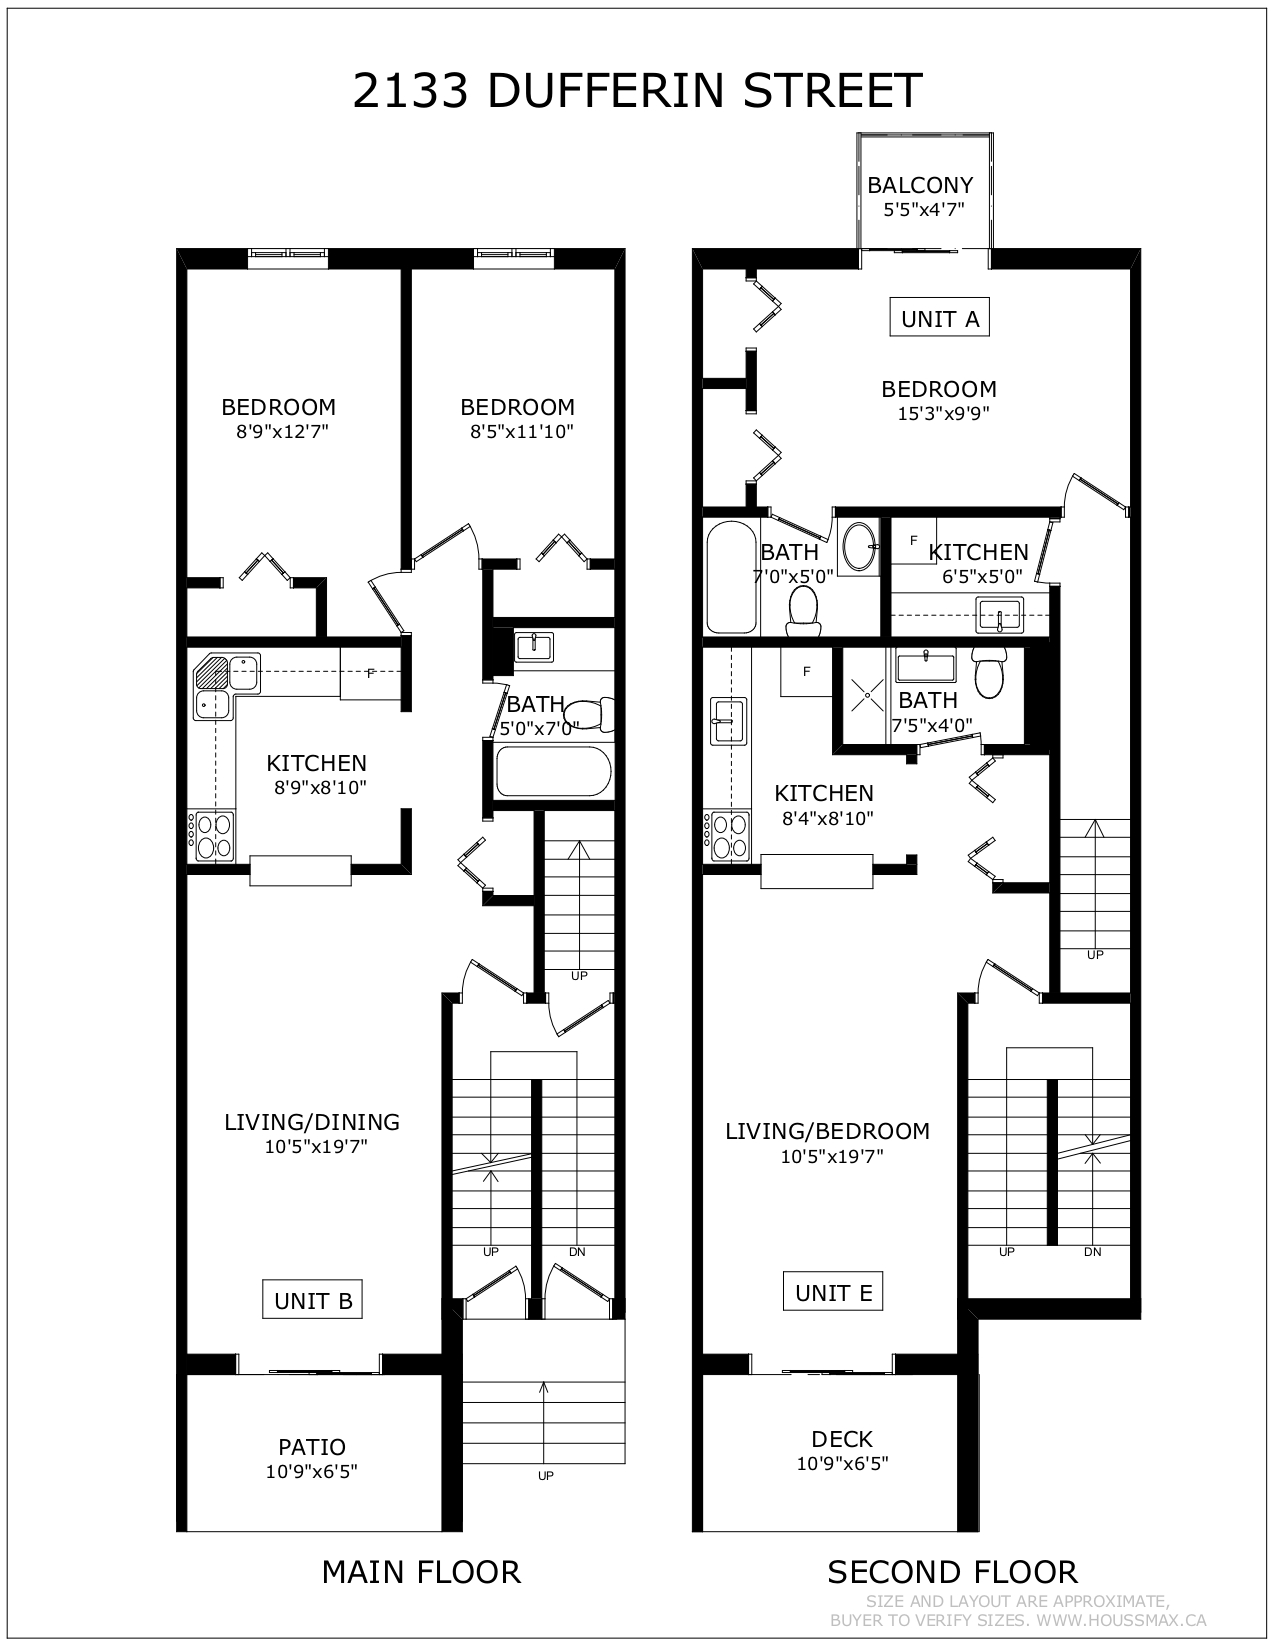 Floor Plans for 2133 Dufferin St - Main Floor & Second Floor